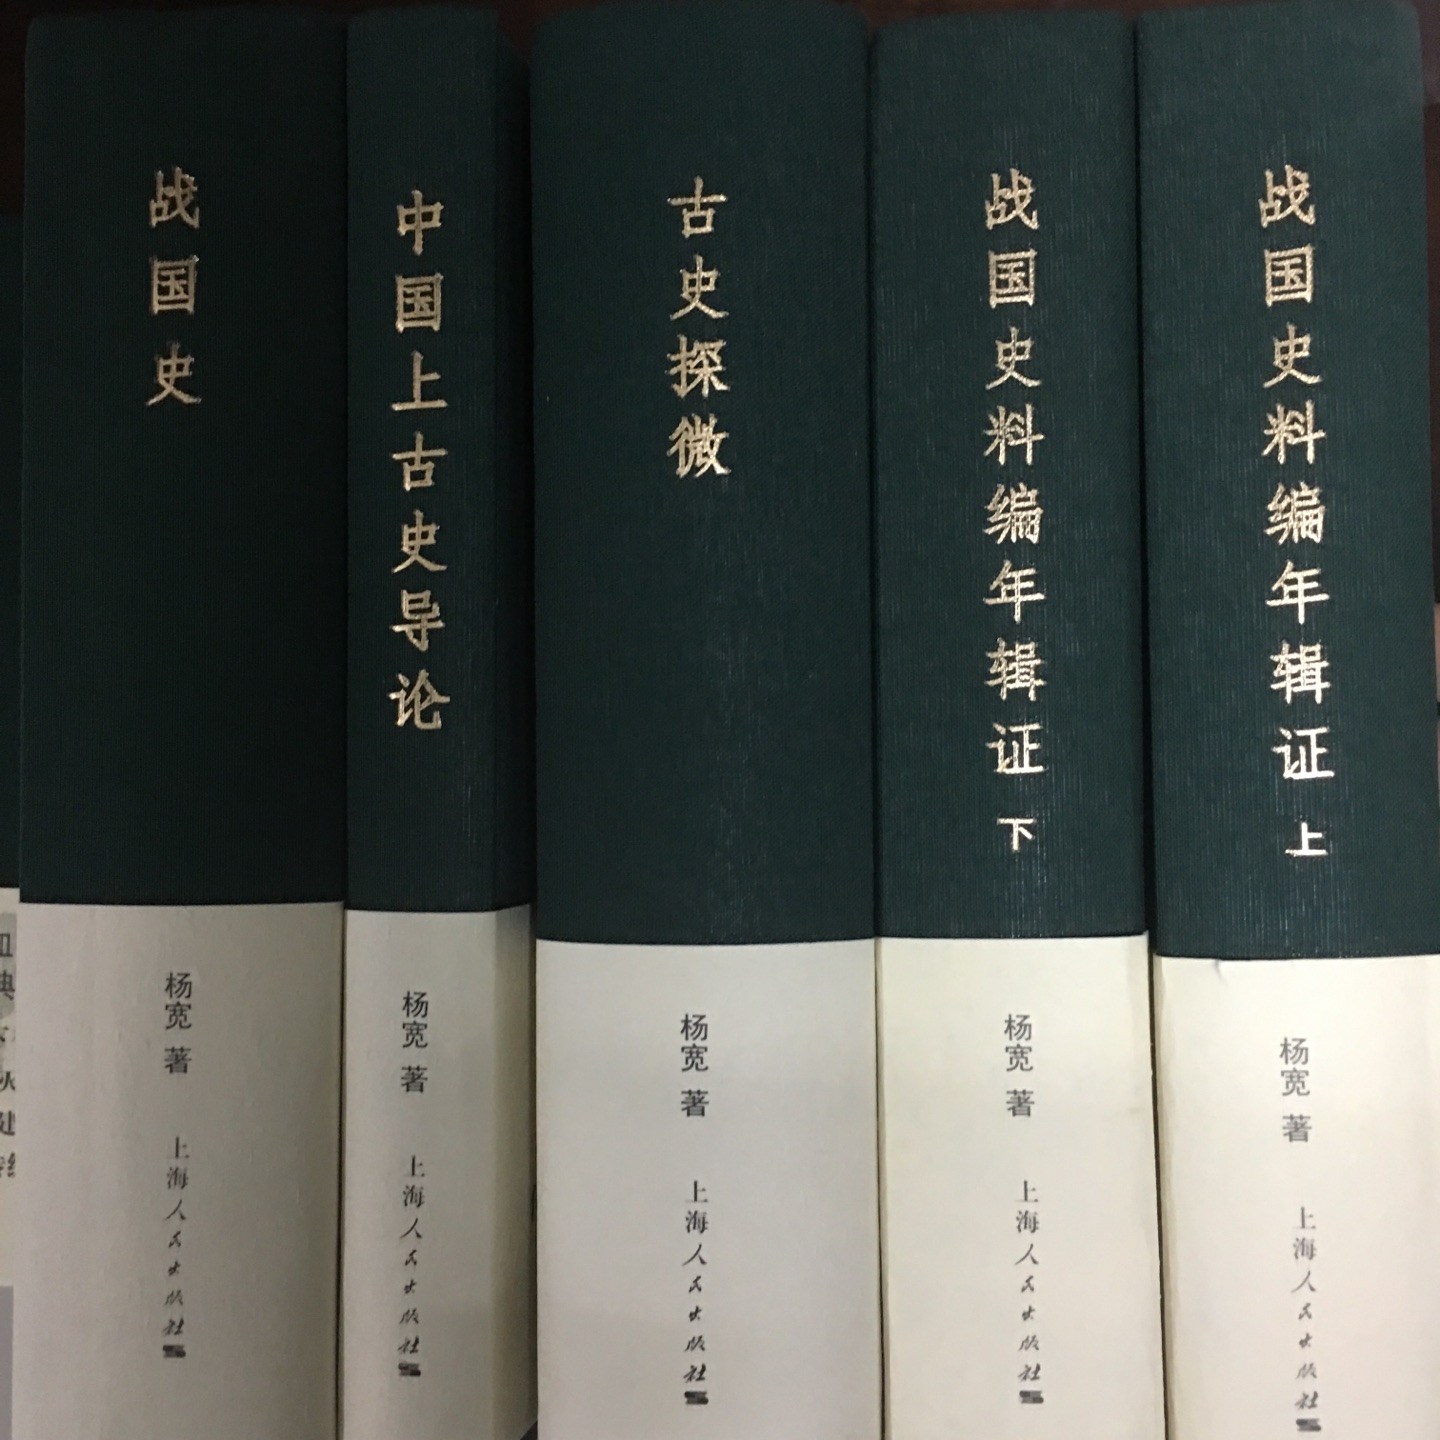 杨宽先生两部断代史，尤以战国史更见功力，也是最受欢迎的著作。学习